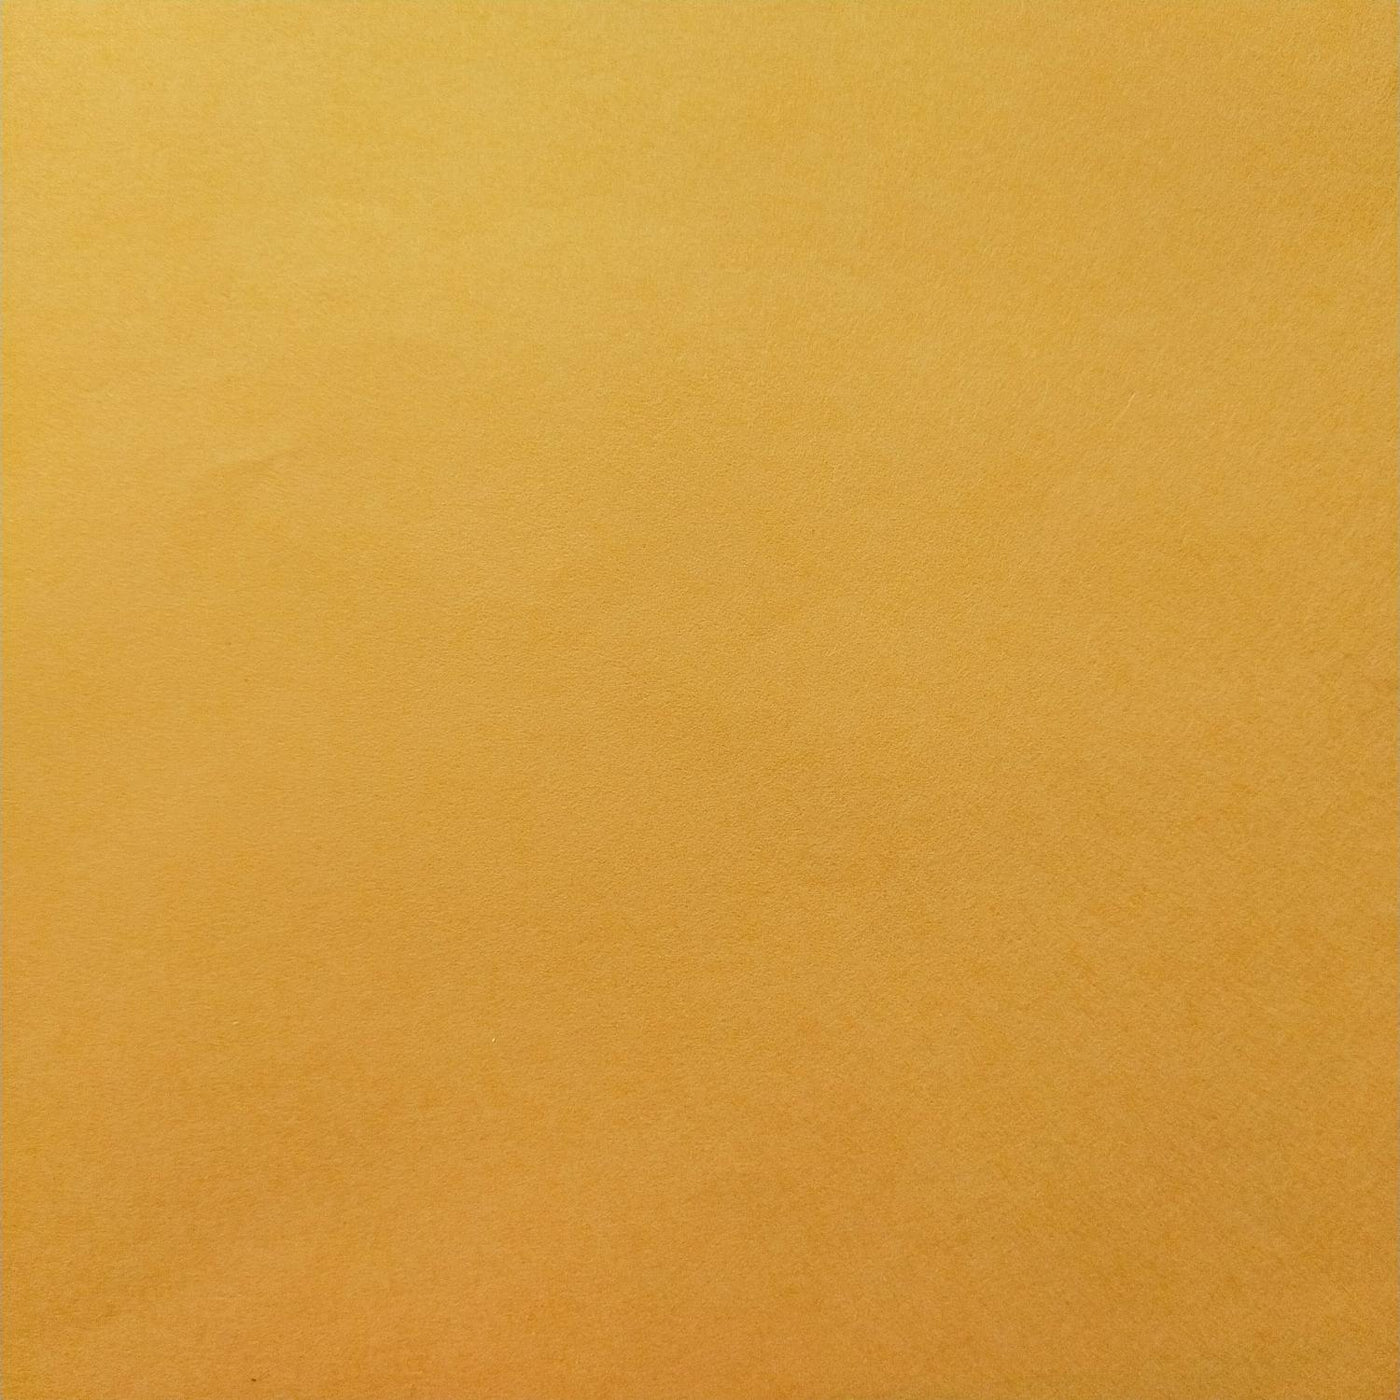 Solid-Colored Kozo Mulberry Paper (Saffron)